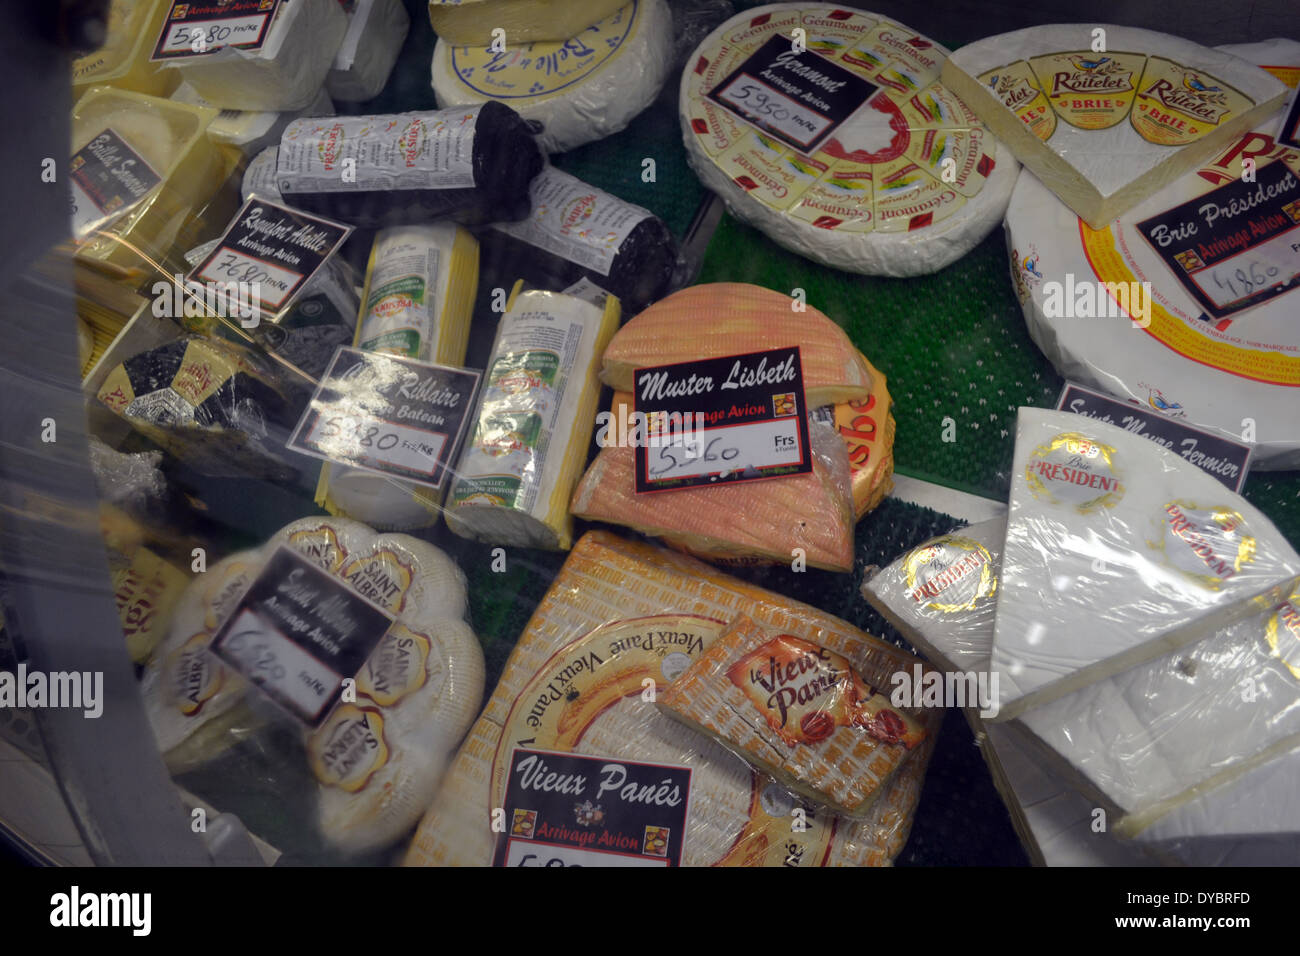 Importierten französischen Käse im Supermarkt in Matautu, Spuren des französischen Einflusses in Wallis Island, Wallis und Futuna Stockfoto